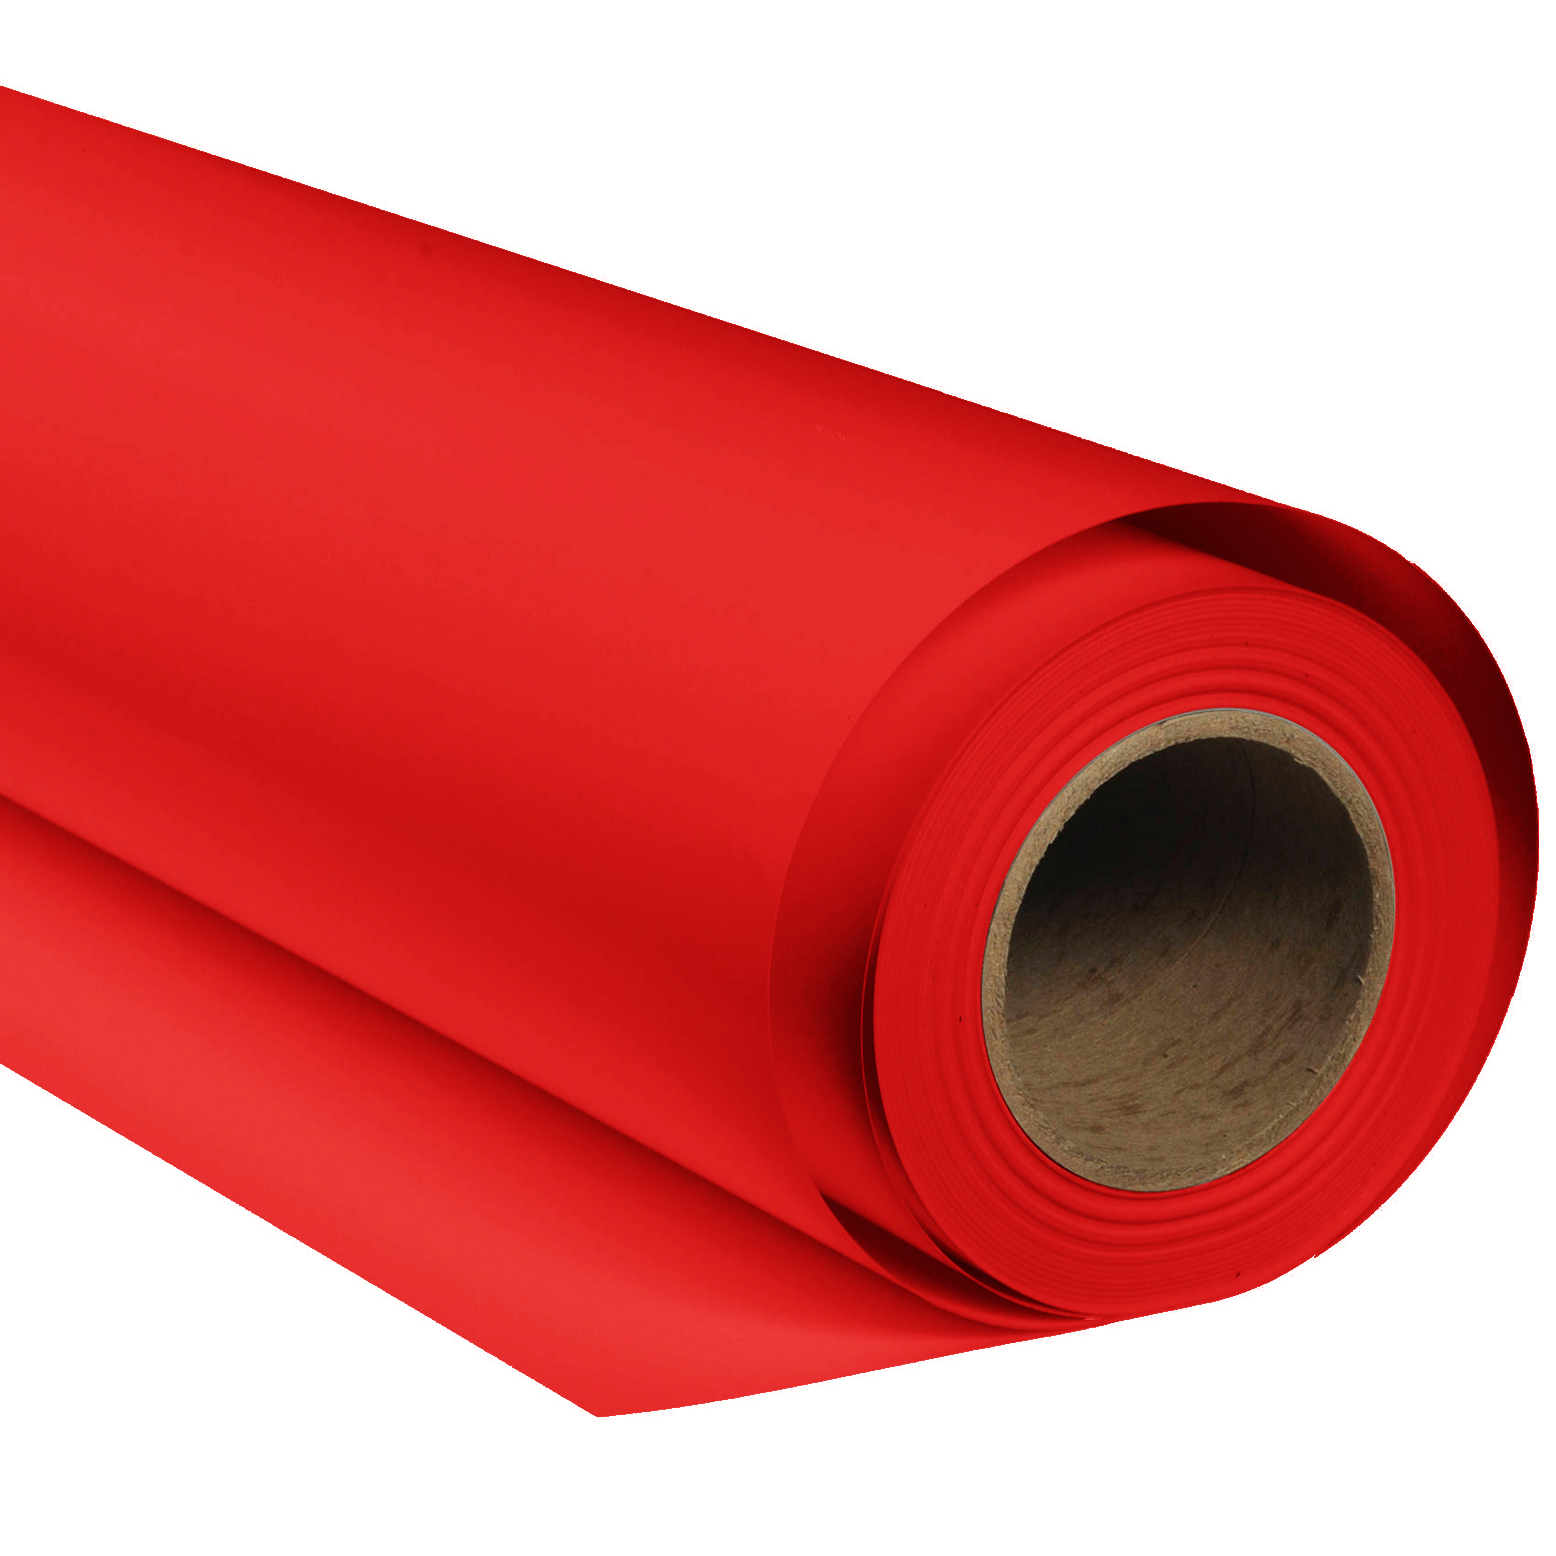 BRESSER SBP05 Papierhintergrundrolle 2,72 x 11m Rot